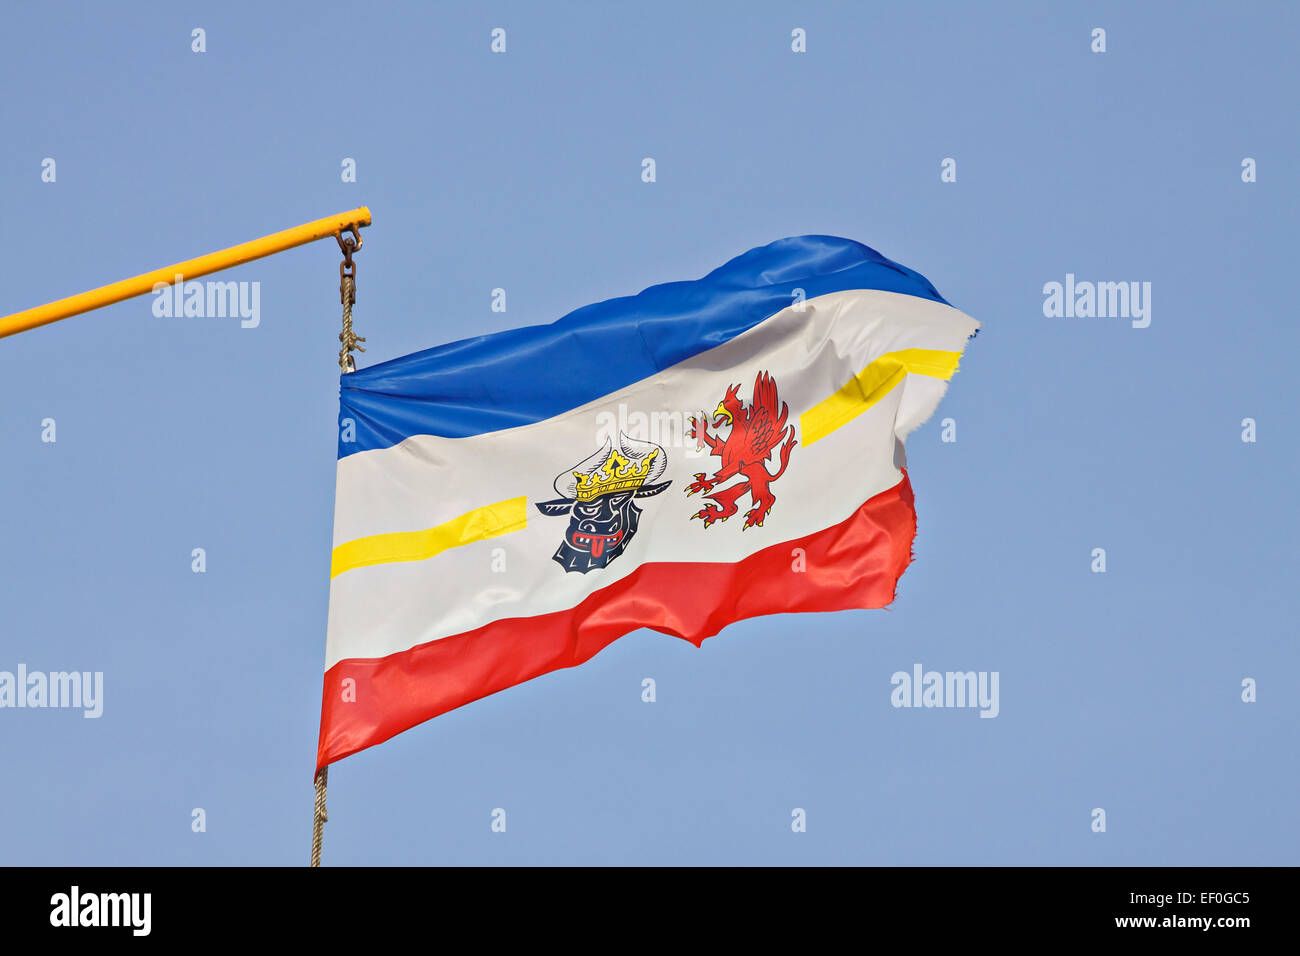 The flag of Mecklenburg-Vorpommern. Stock Photo